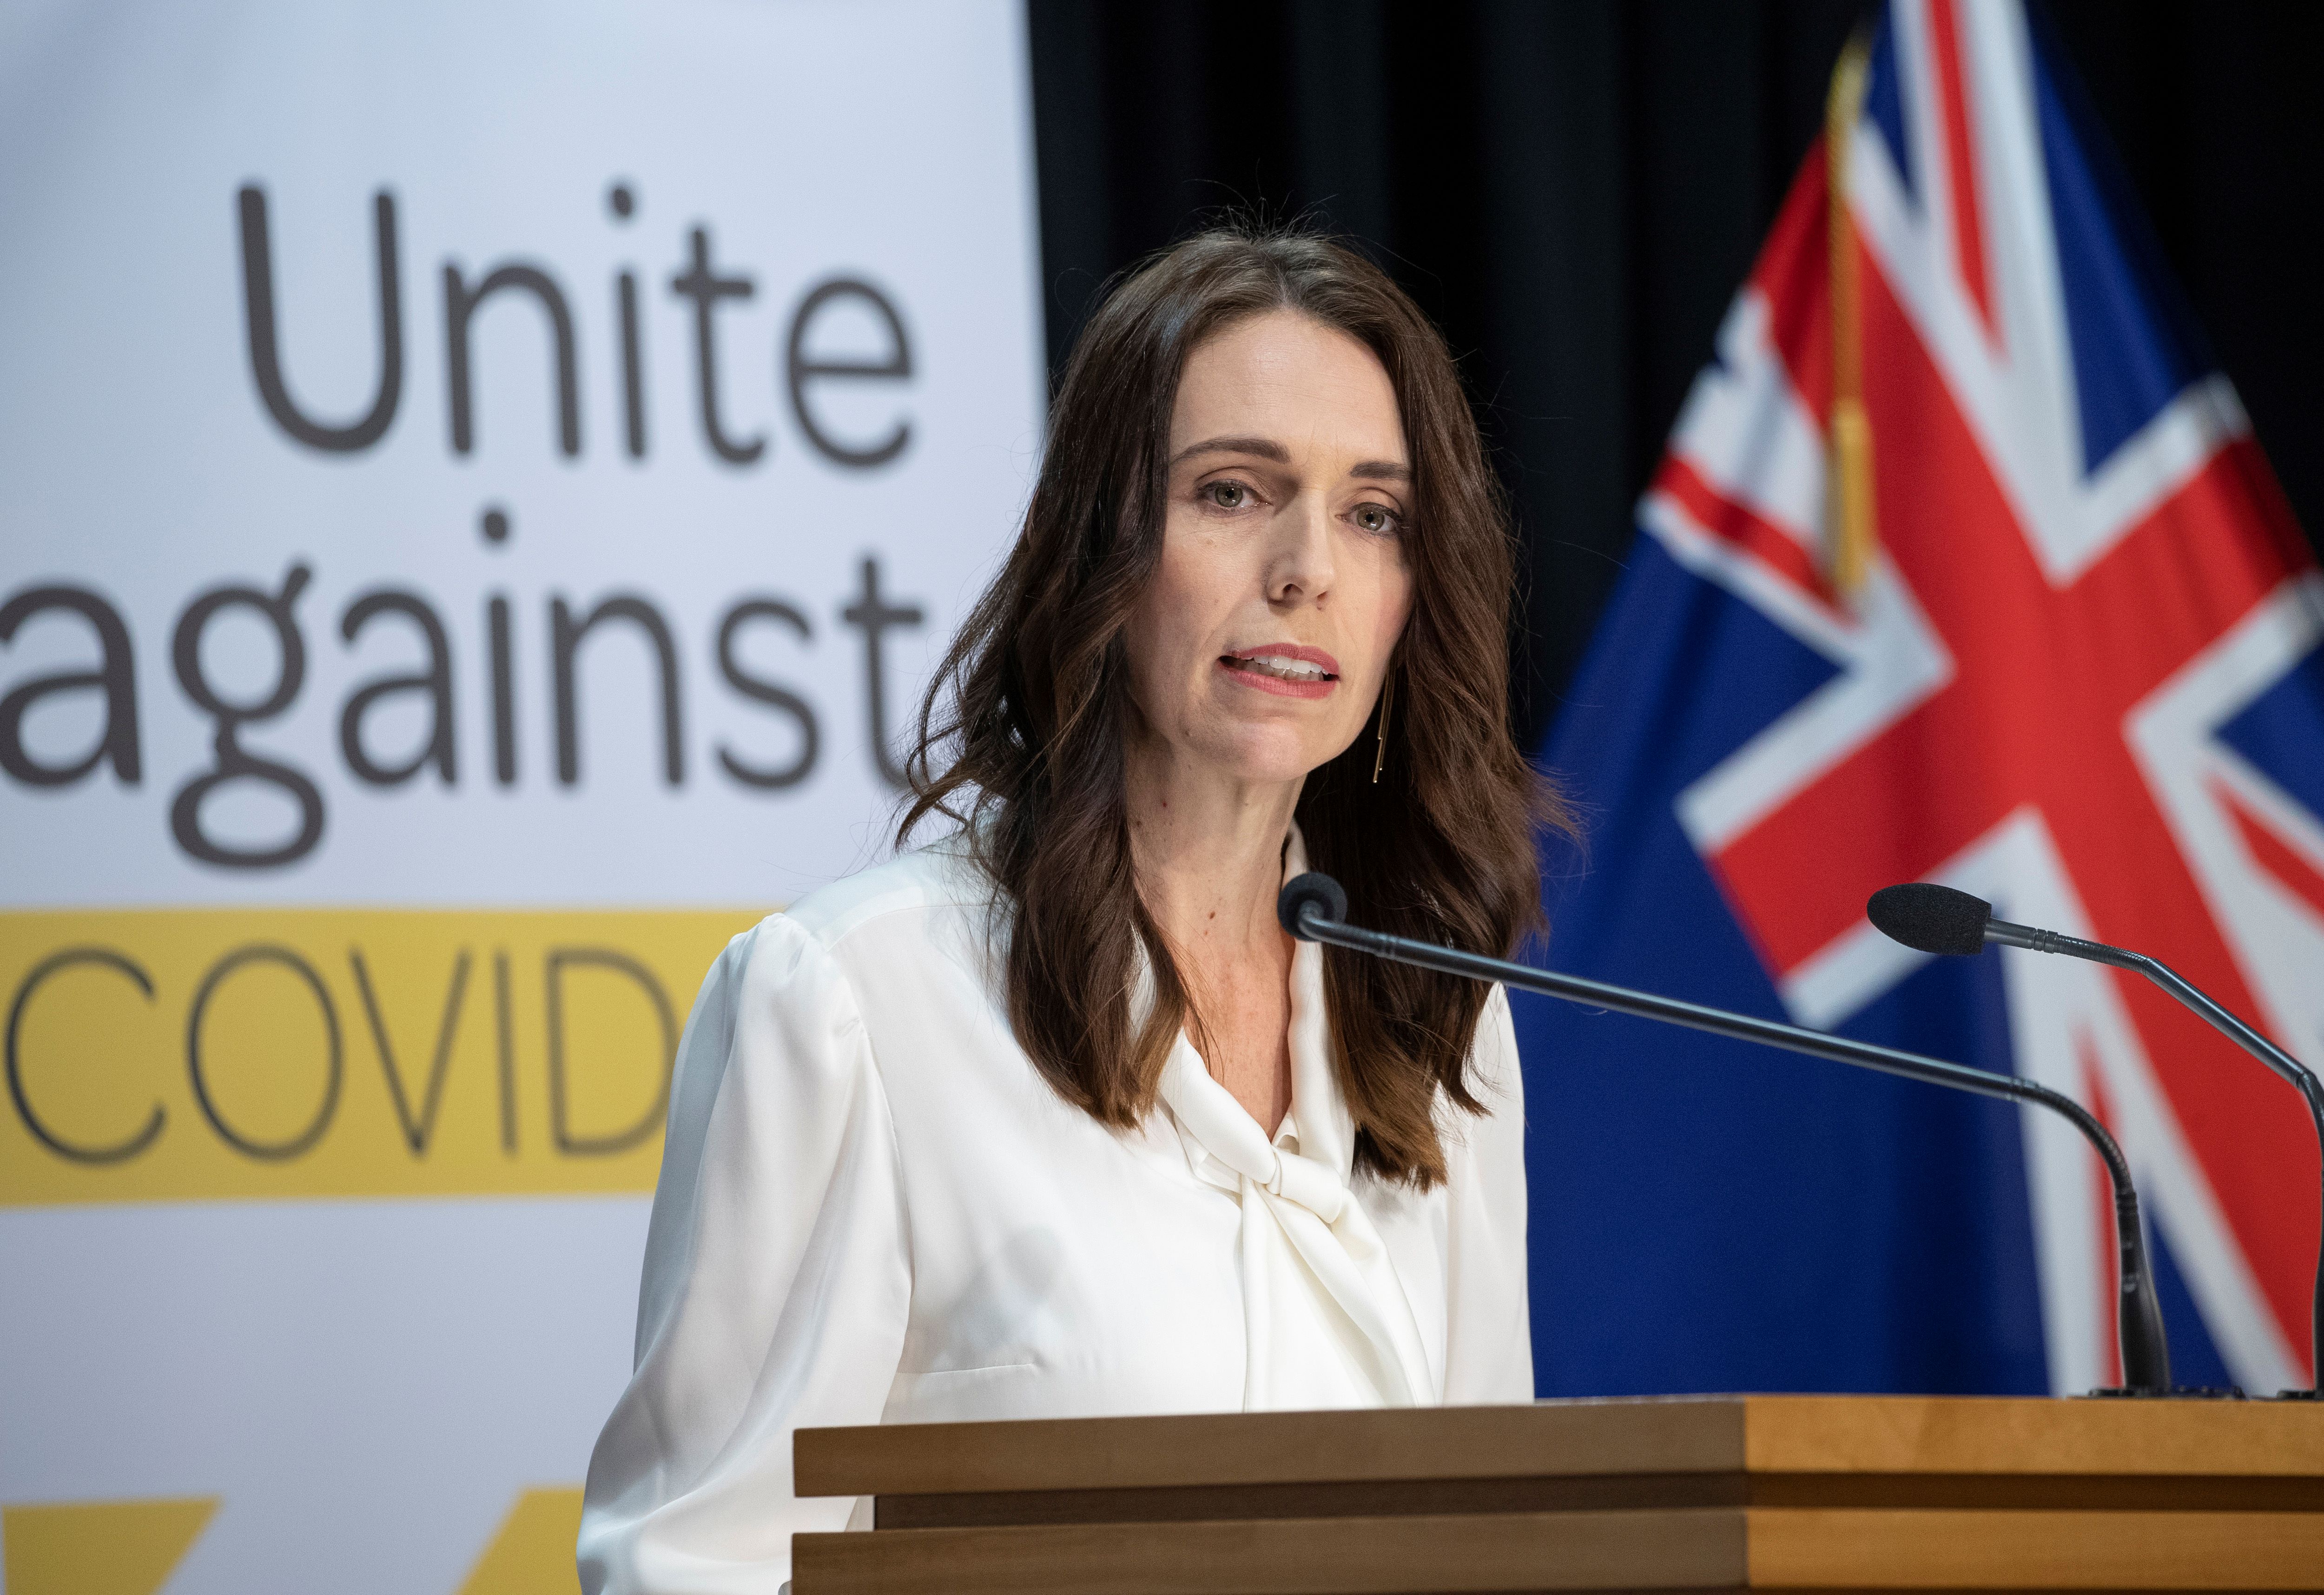 Nova Zelandia Declara Lockdown Apos Confirmacao De 1Âº Caso Em 6 Meses Veja